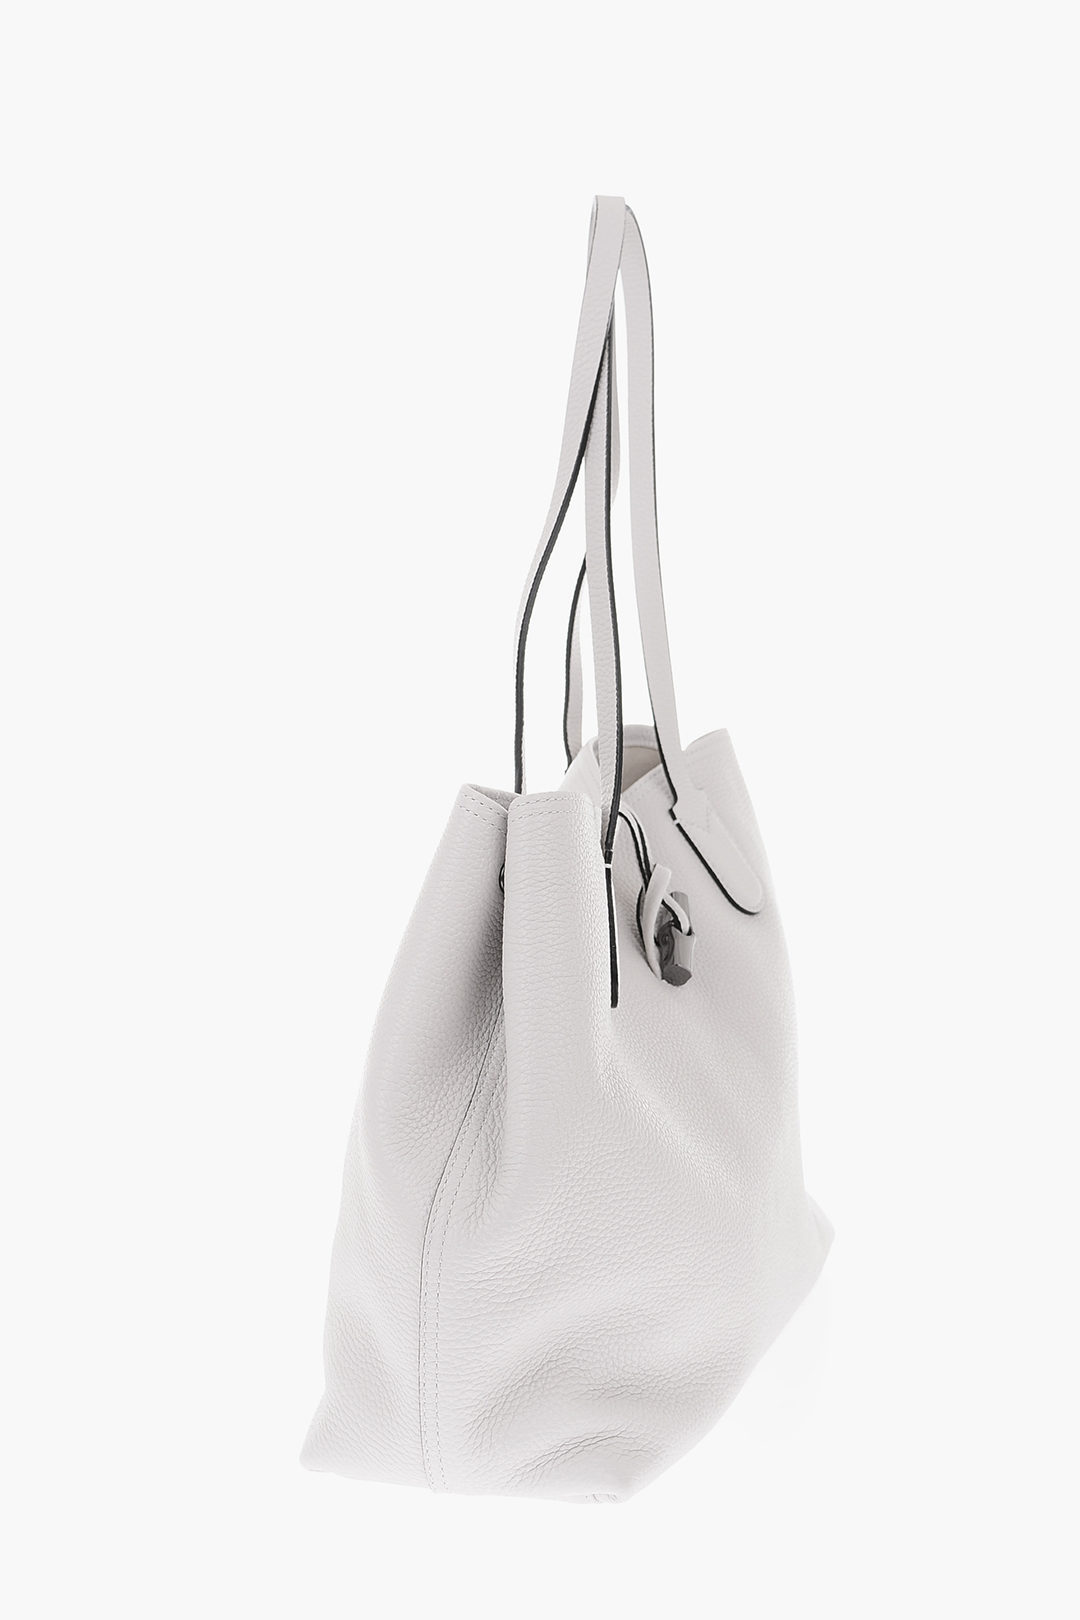 Longchamp Roseau Hobo Women Bag, Women's Fashion, Bags & Wallets